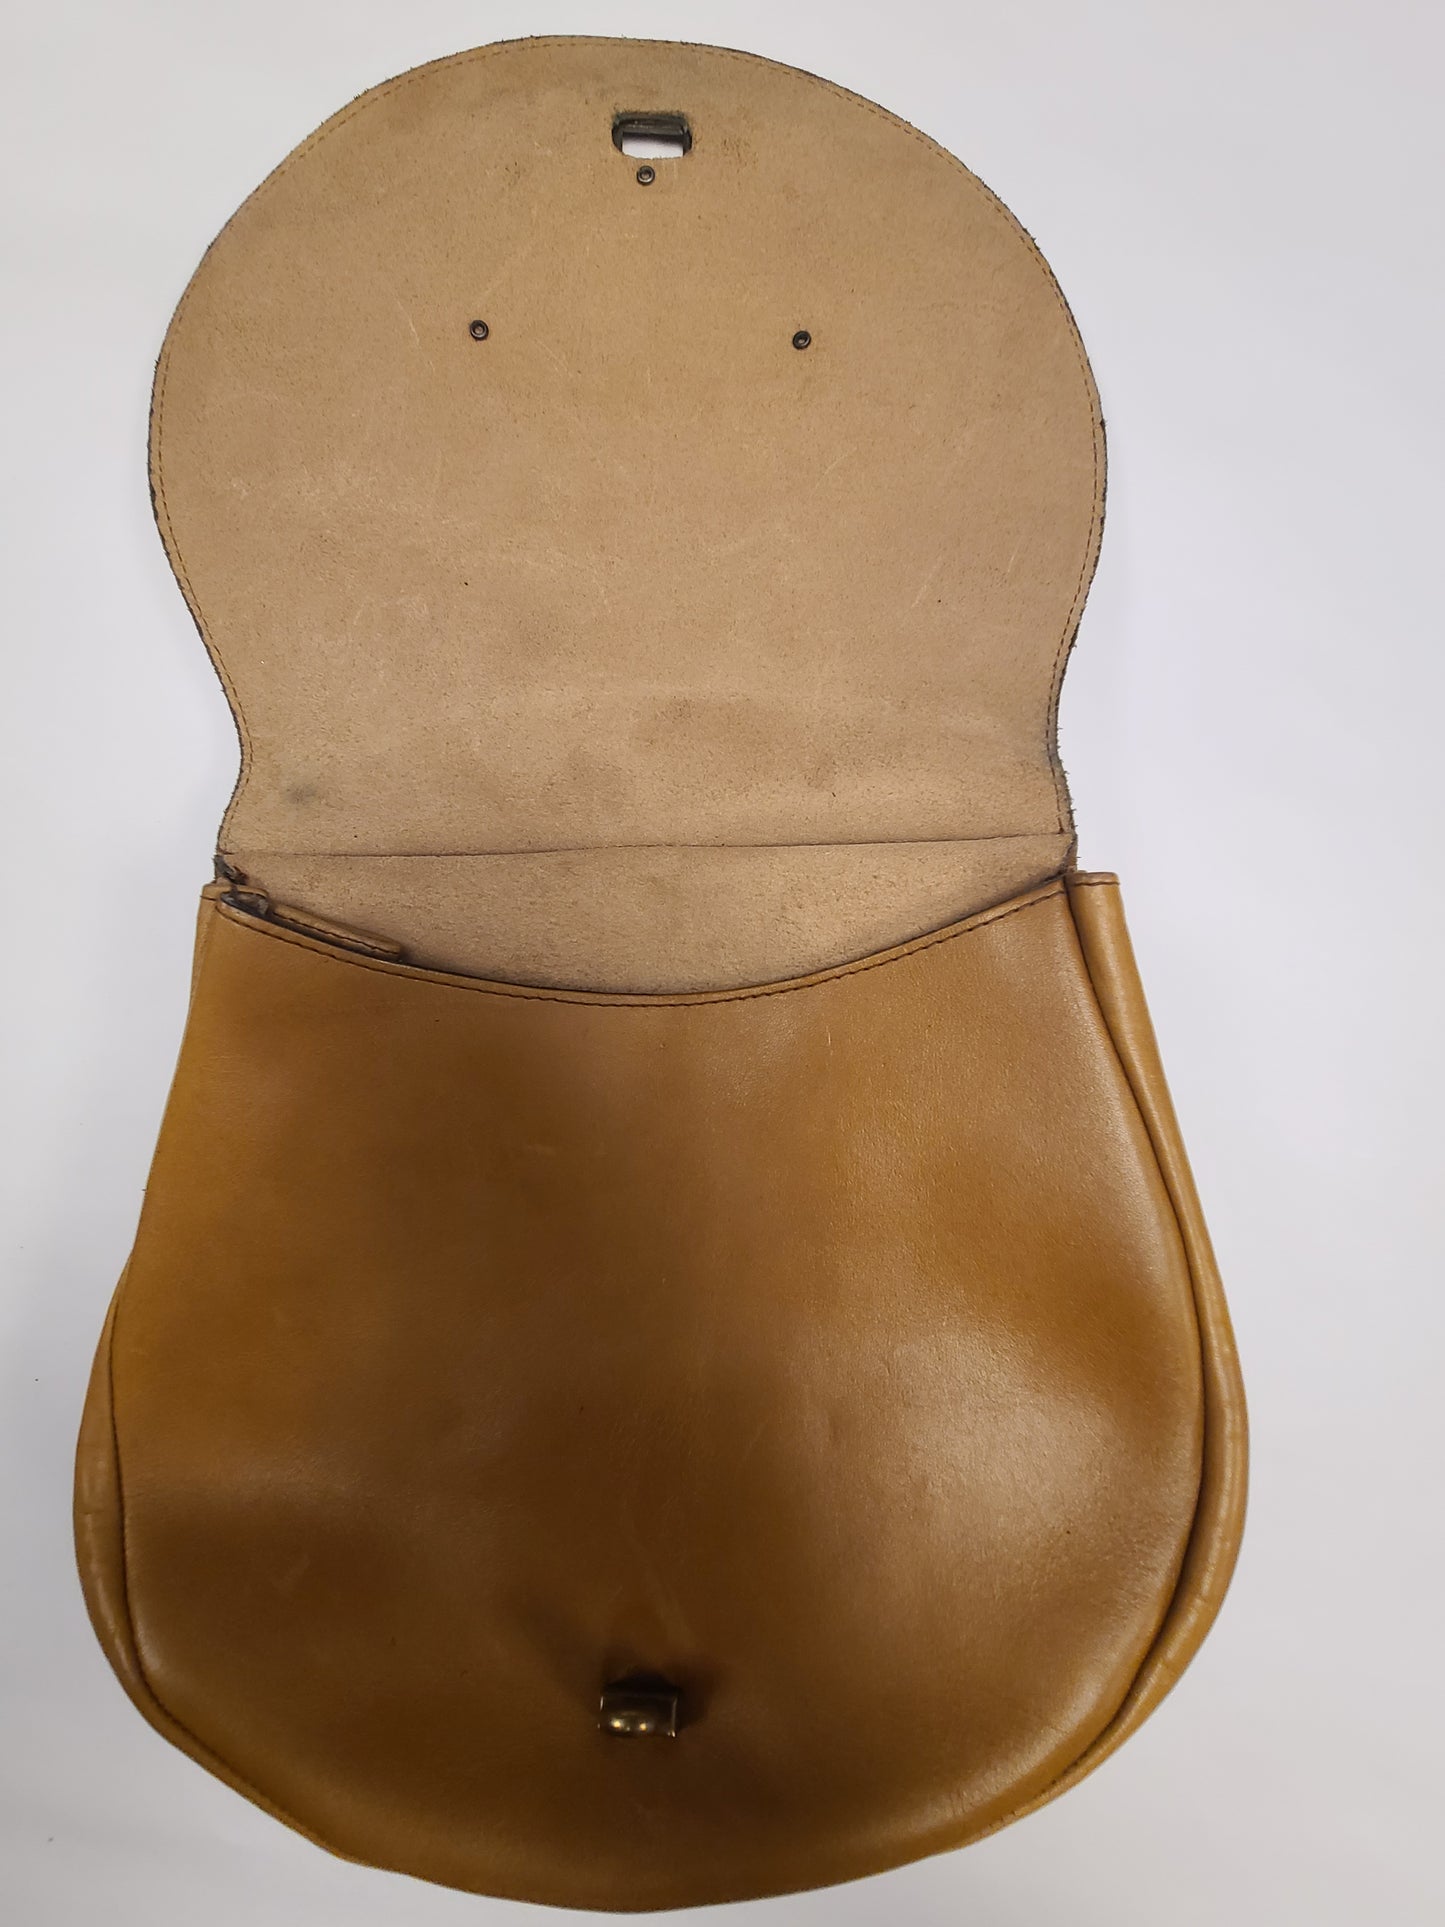 Vintage Leather Flap Bag Saddlebag